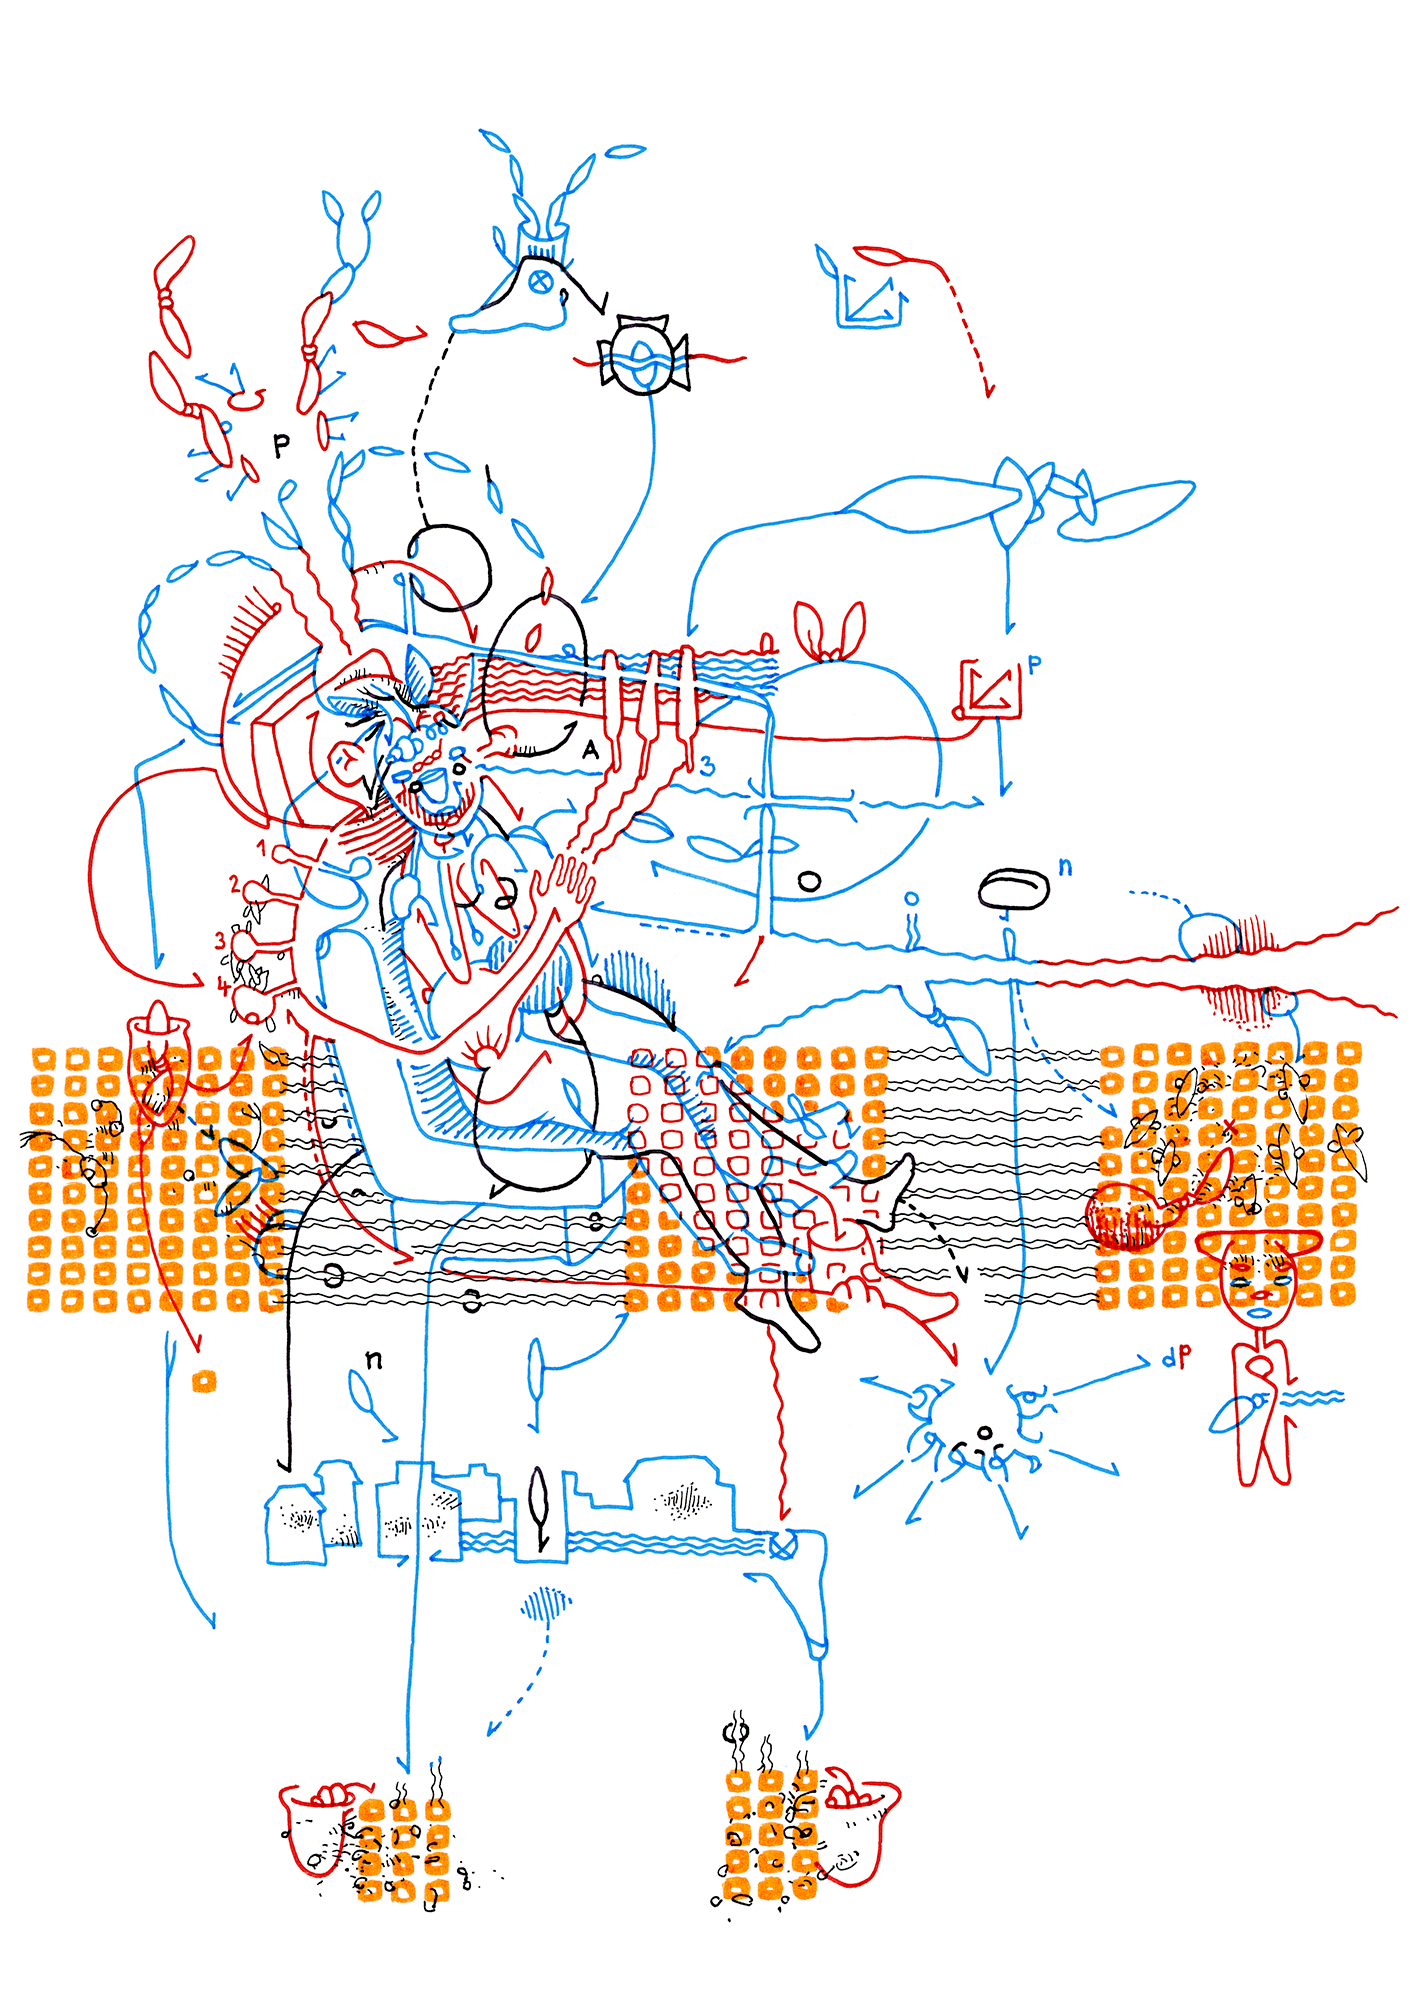 Hannes Kater: Tageszeichnung (Zeichnung/drawing) vom 15.12.2014 (1414 x 2000 Pixel)